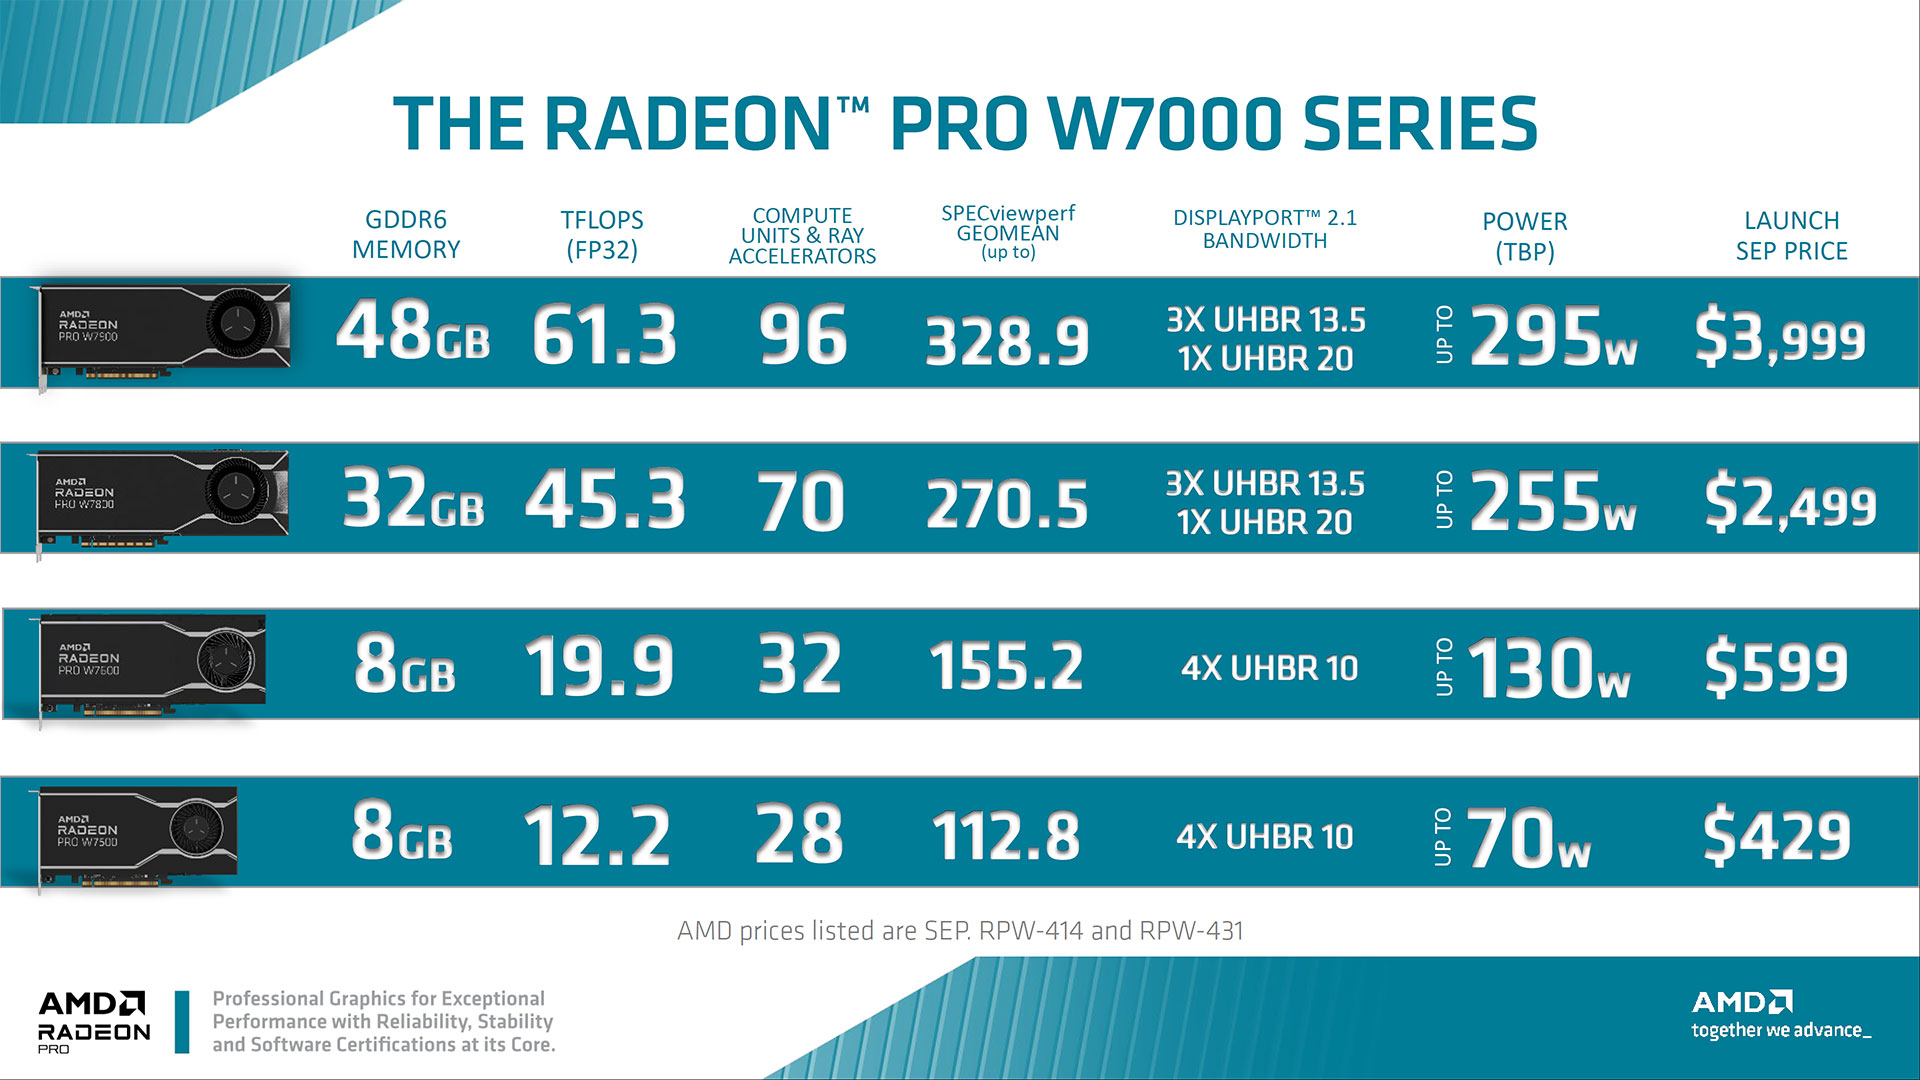 AMD Radeon Pro W7600 W7500 Slide-Deck